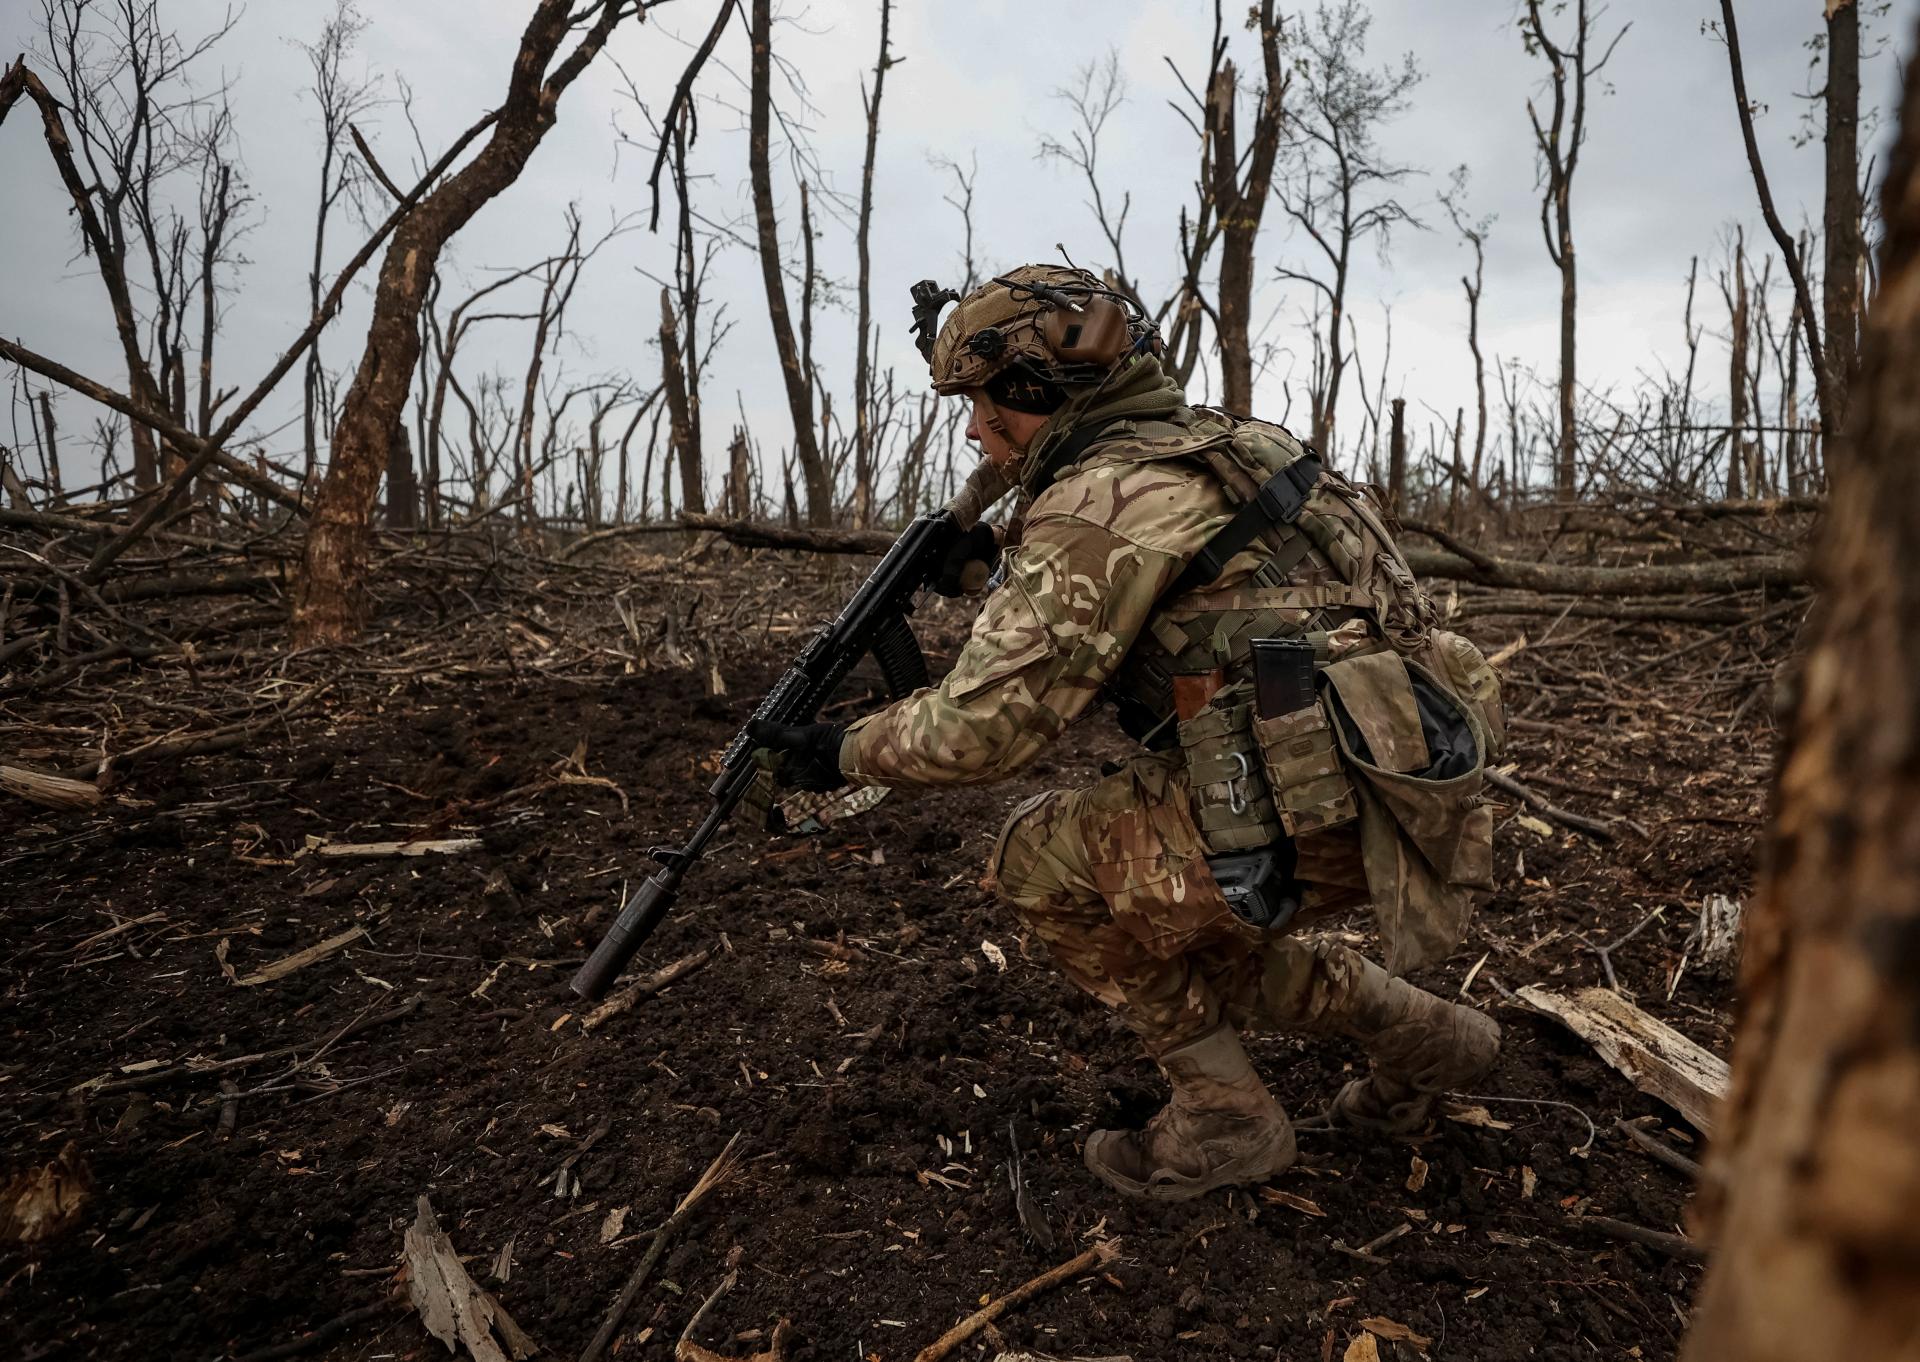 Ukrajina podnikla úspešný protiútok pri Bachmute, ruskí vojaci utekajú pred delostreleckou paľbou